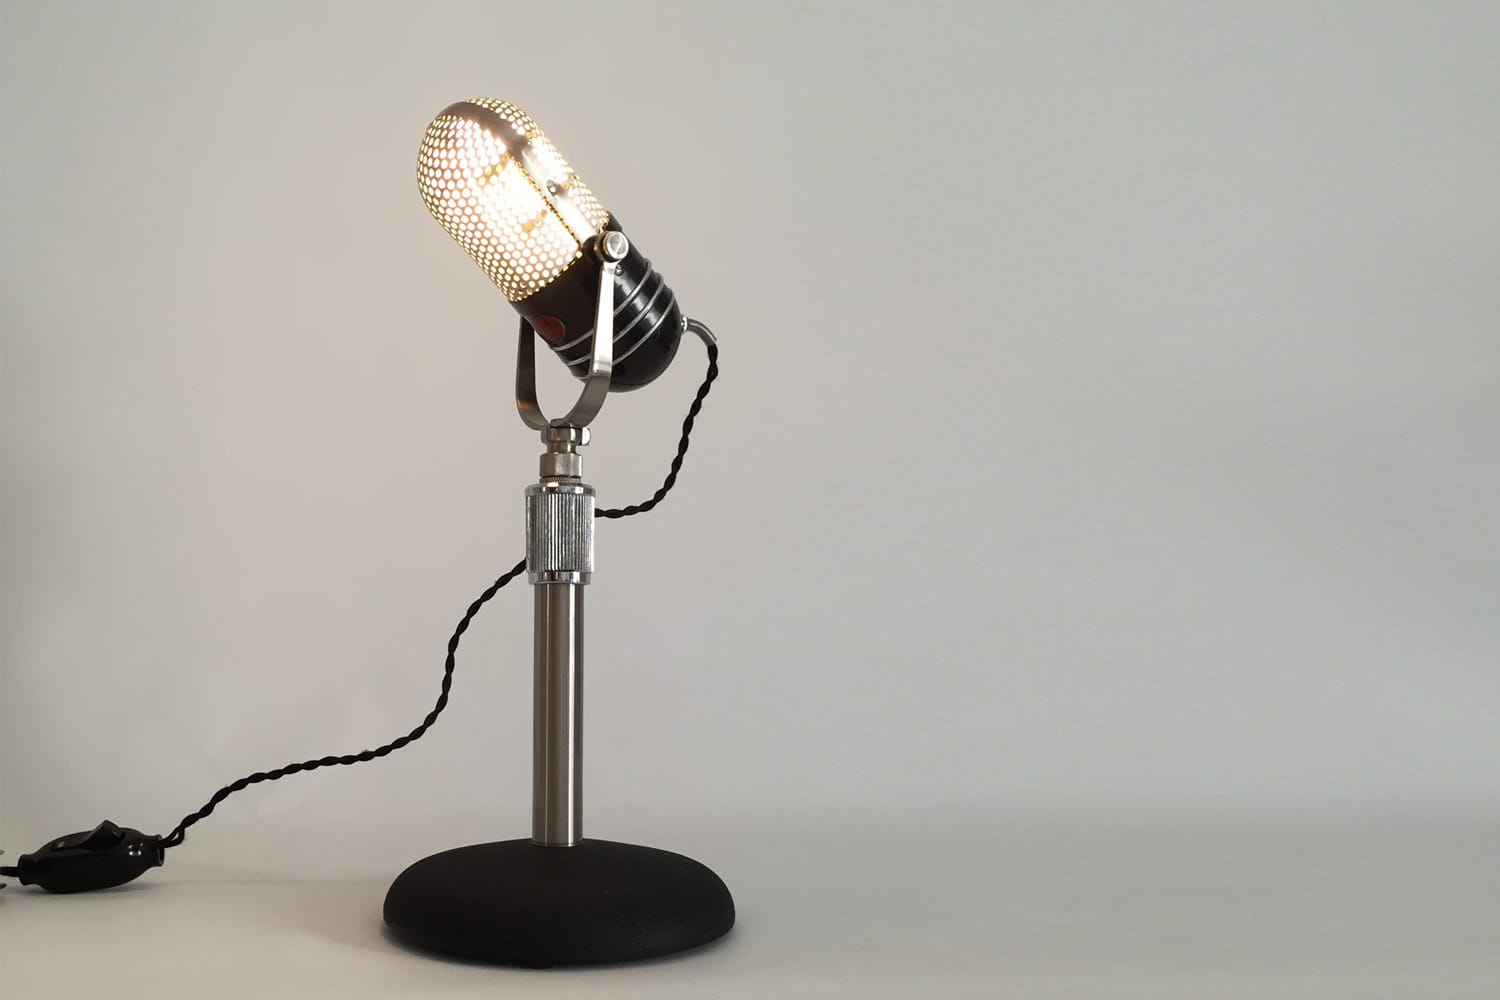 Im Microphonic-Shop auf Etsy gibt es schicke Unikate: Aus alten Mikrophonen werden trendige Upcycling-Lampen (um 1400 Euro) hergestellt.